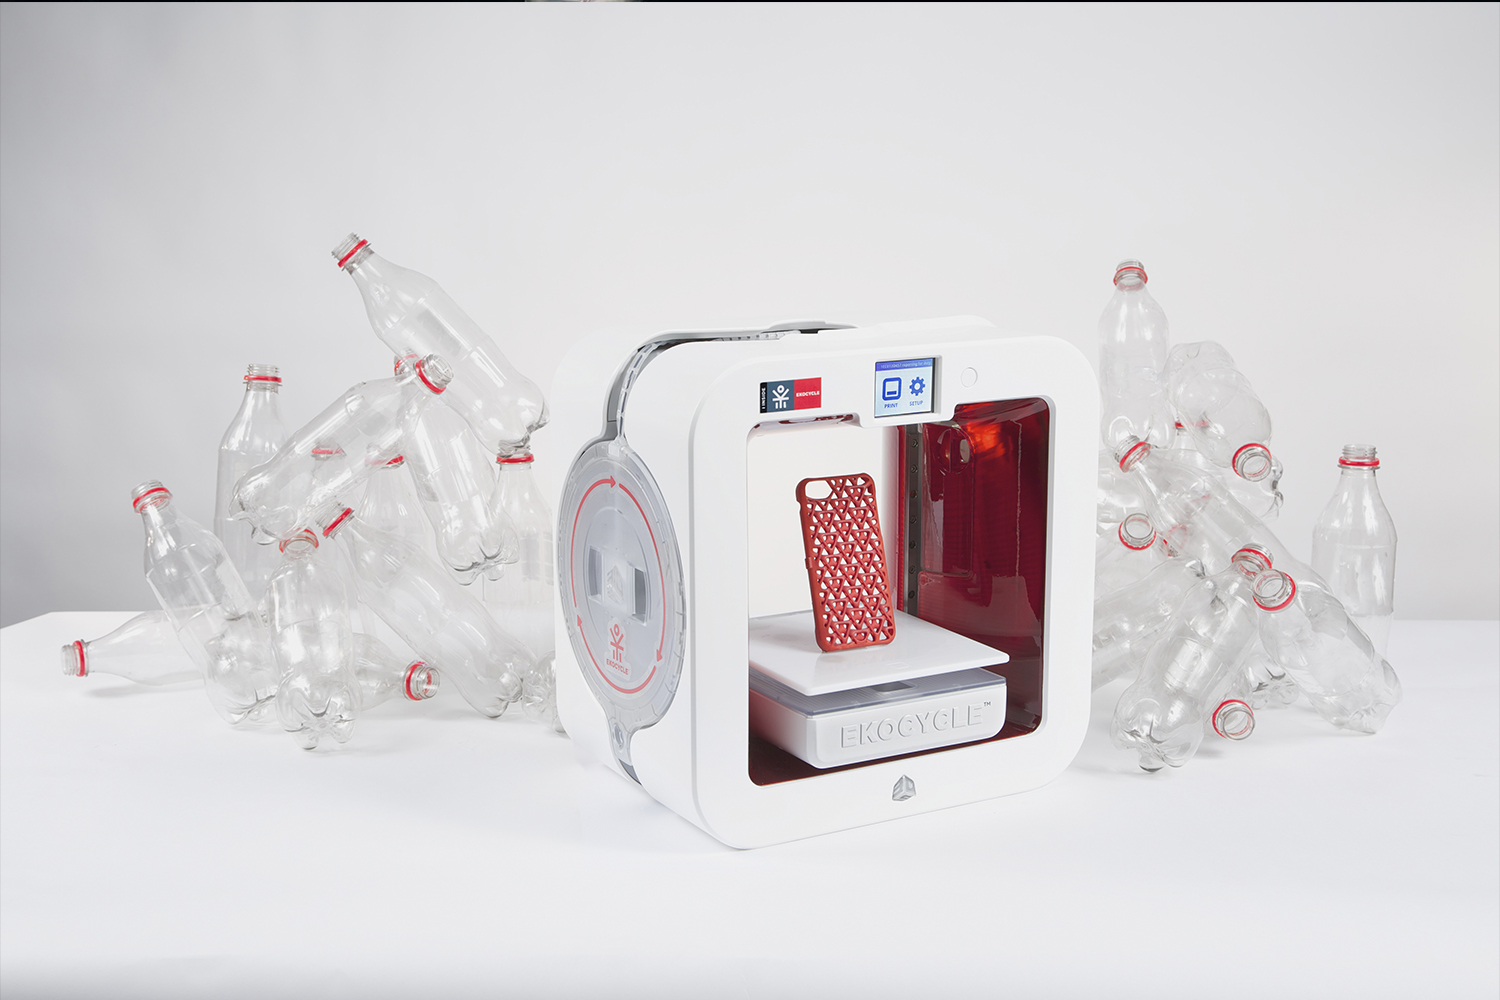 Ekocycle Cube utiliza cartuchos con un 25% de PET reciclado, equivalente a tres botellas de medio litro. Tiene la capacidad de imprimir objetos con un tamaño de hasta 15 centímetros y una resolución de 70 micrones.
